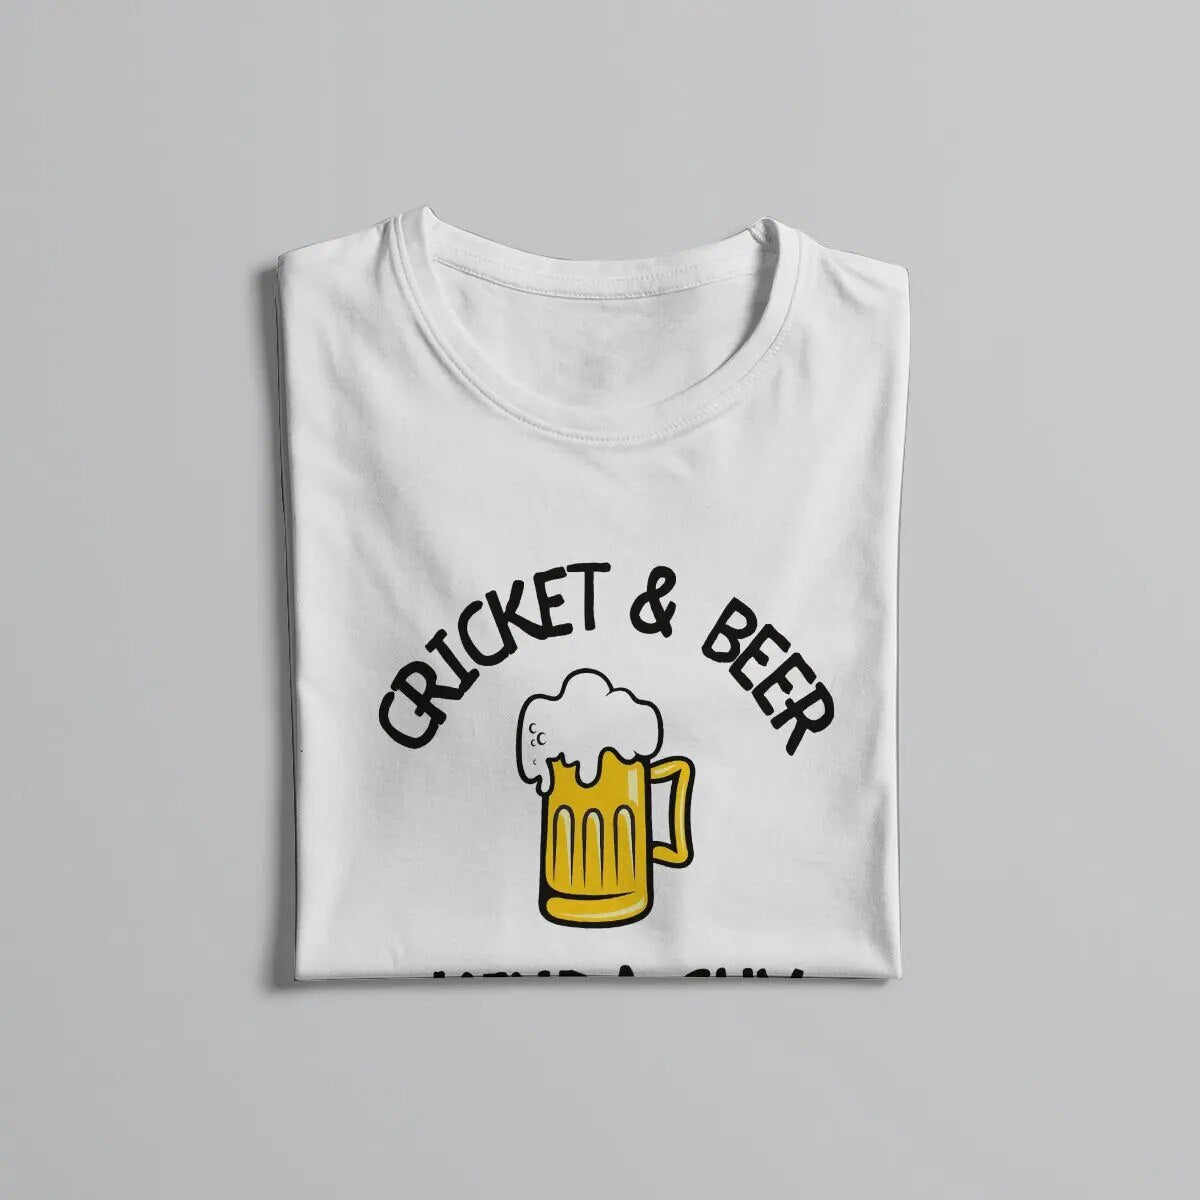 Cricket & Beer Kinda Guy T-Shirt for Men White